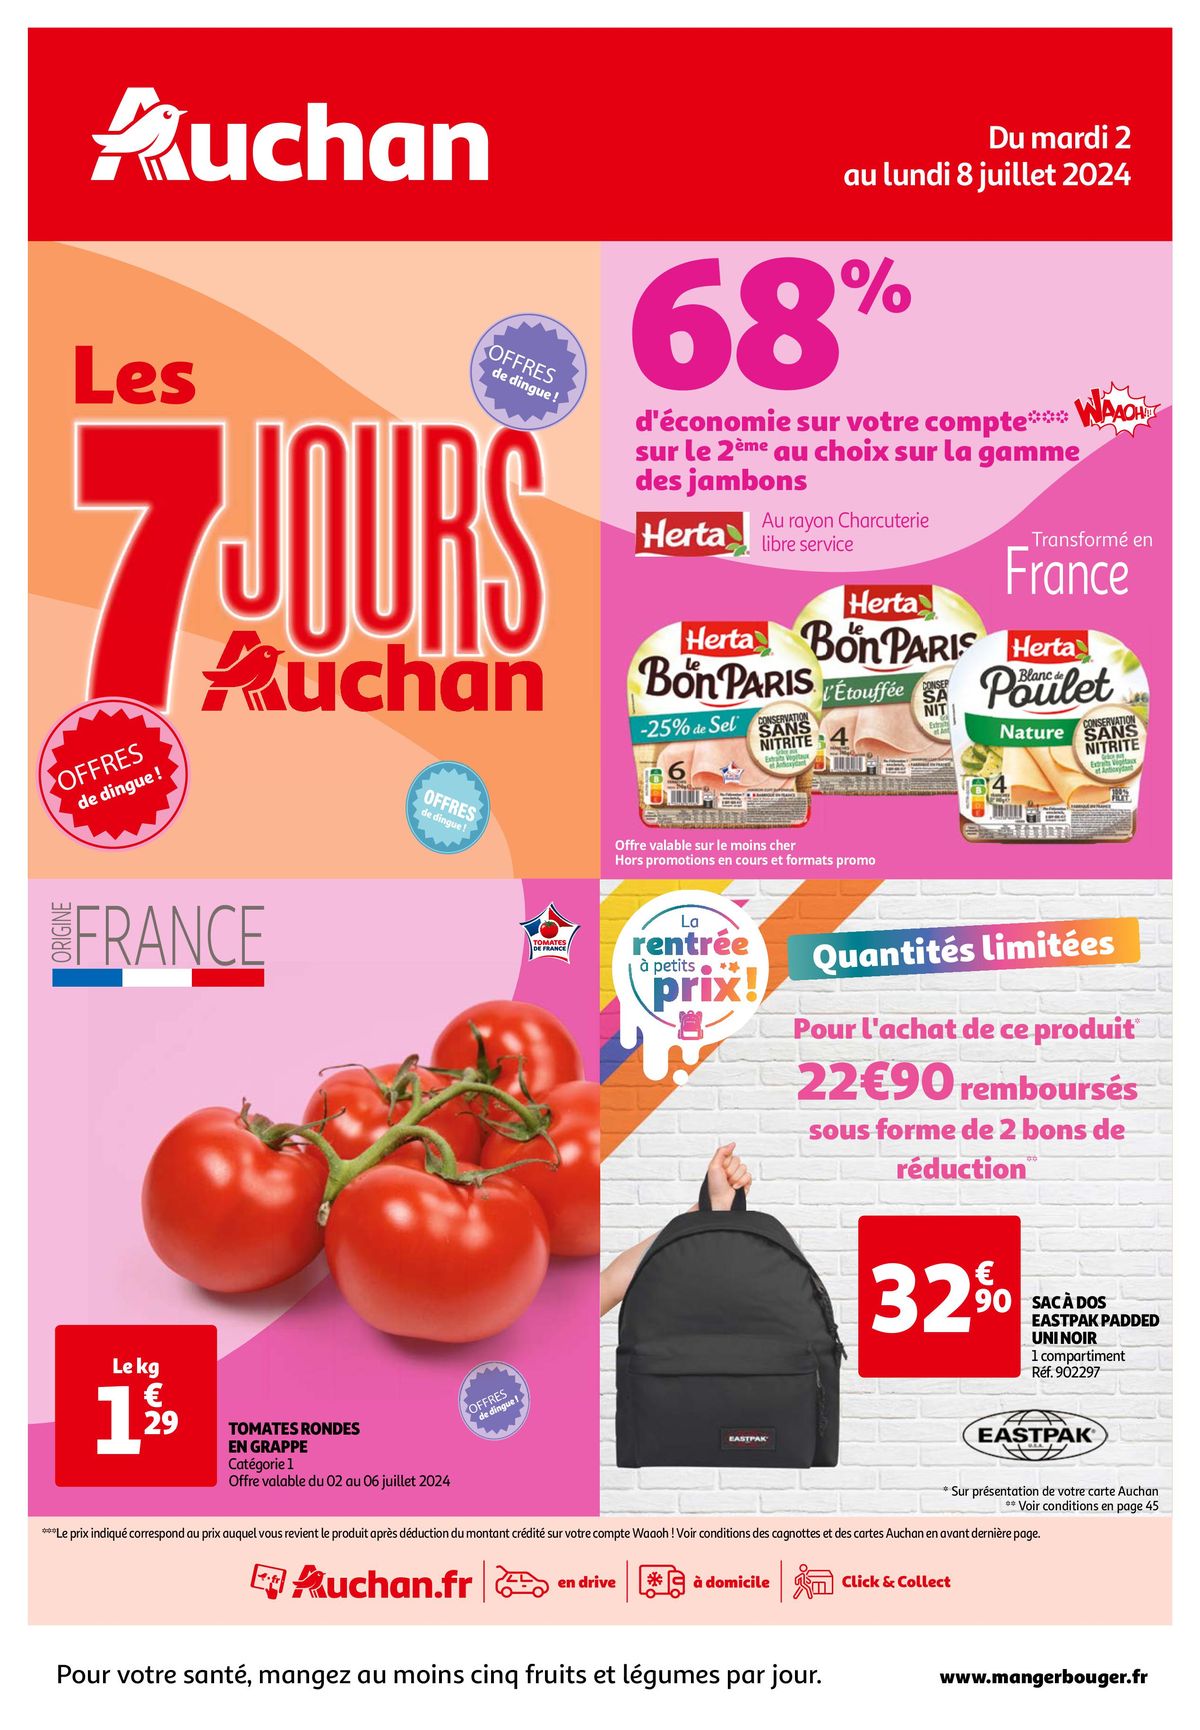 Catalogue Les 7 jours Auchan, c'est maintenant !, page 00001